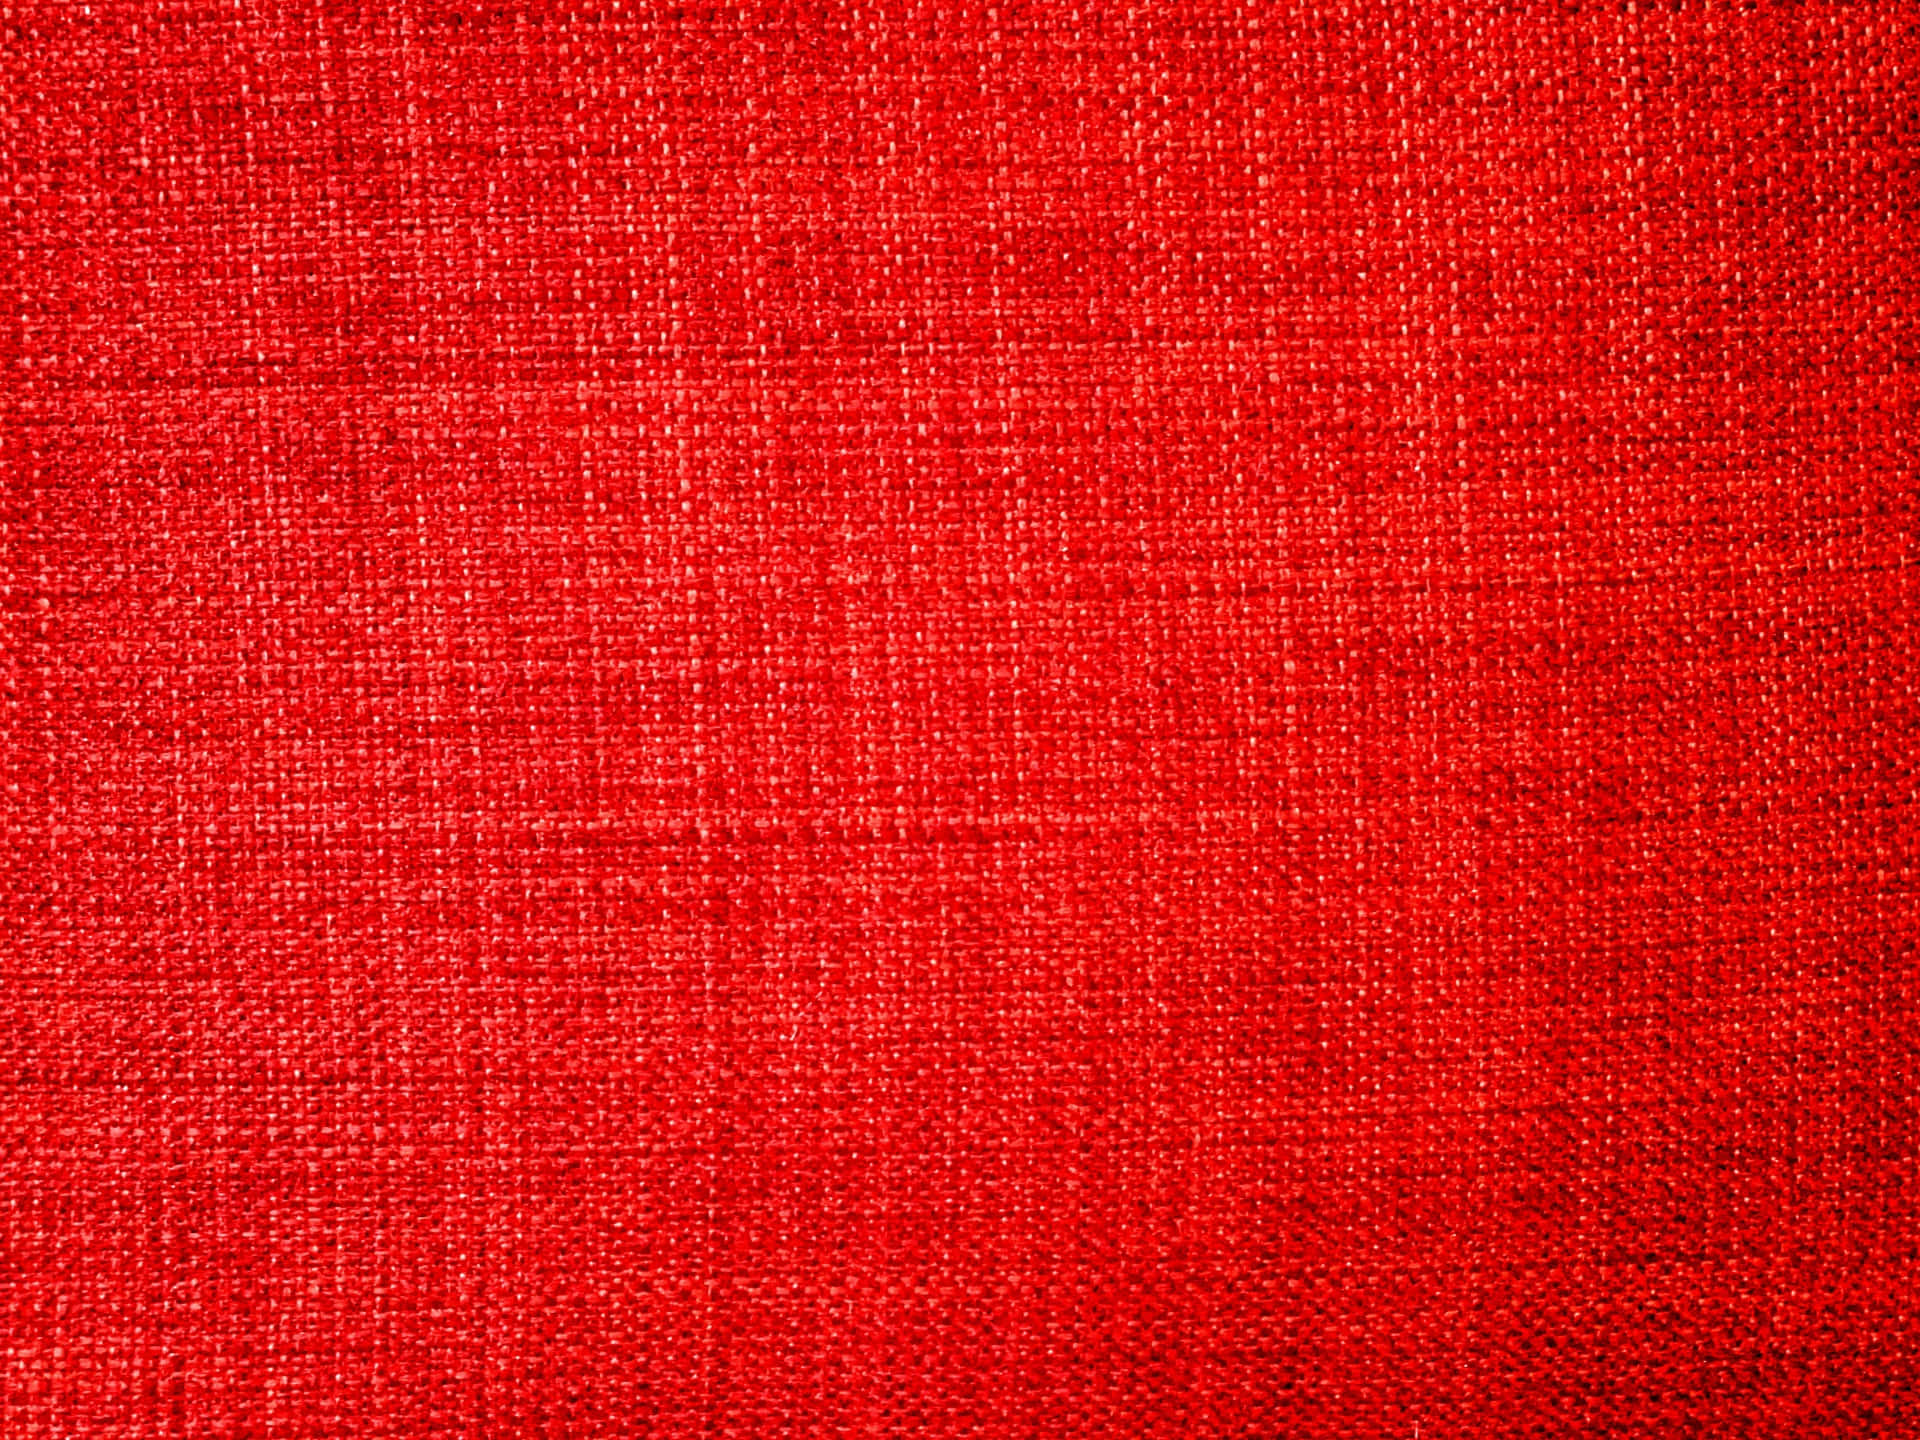 Imagensde Textura De Tecido Em Vermelho - Tecido De Linho